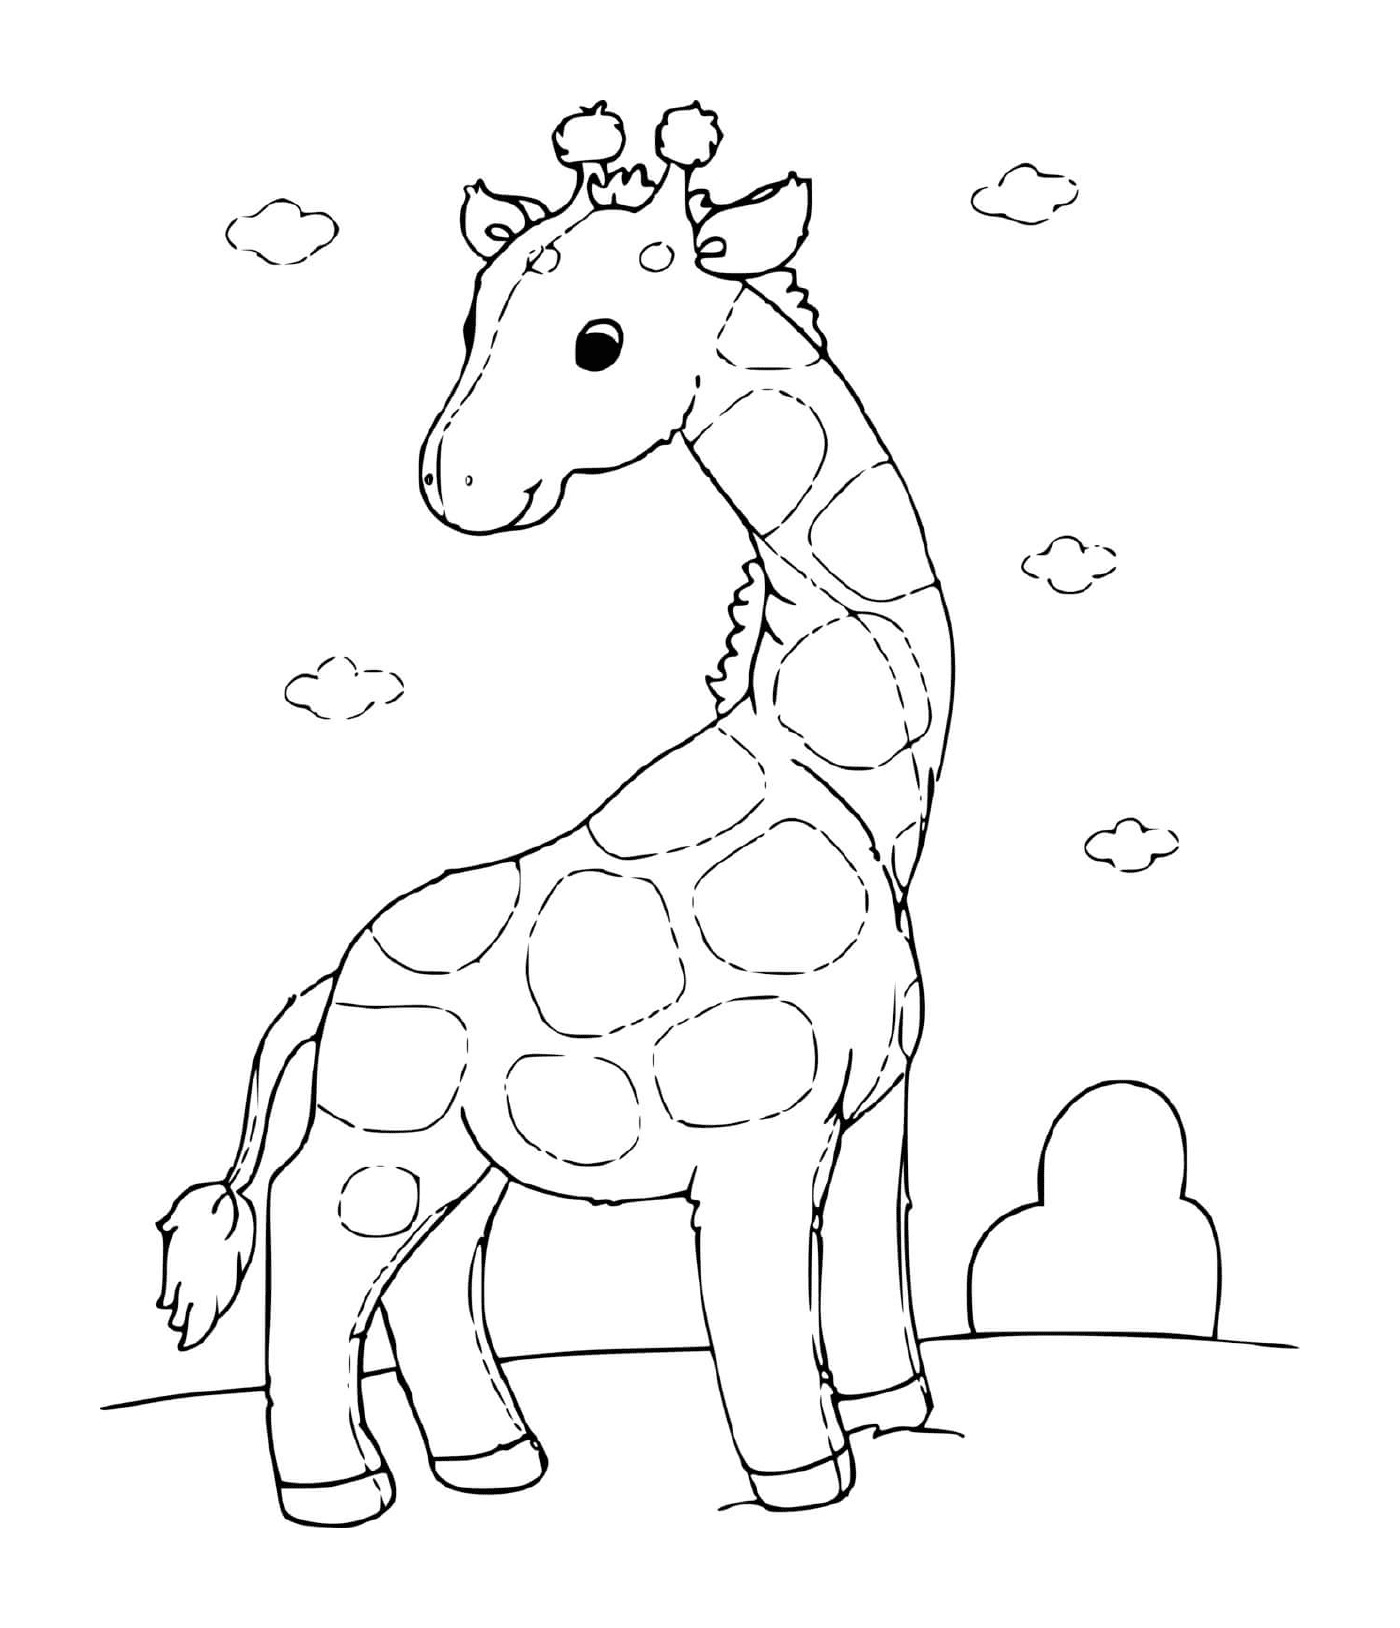  A lovely giraffe 